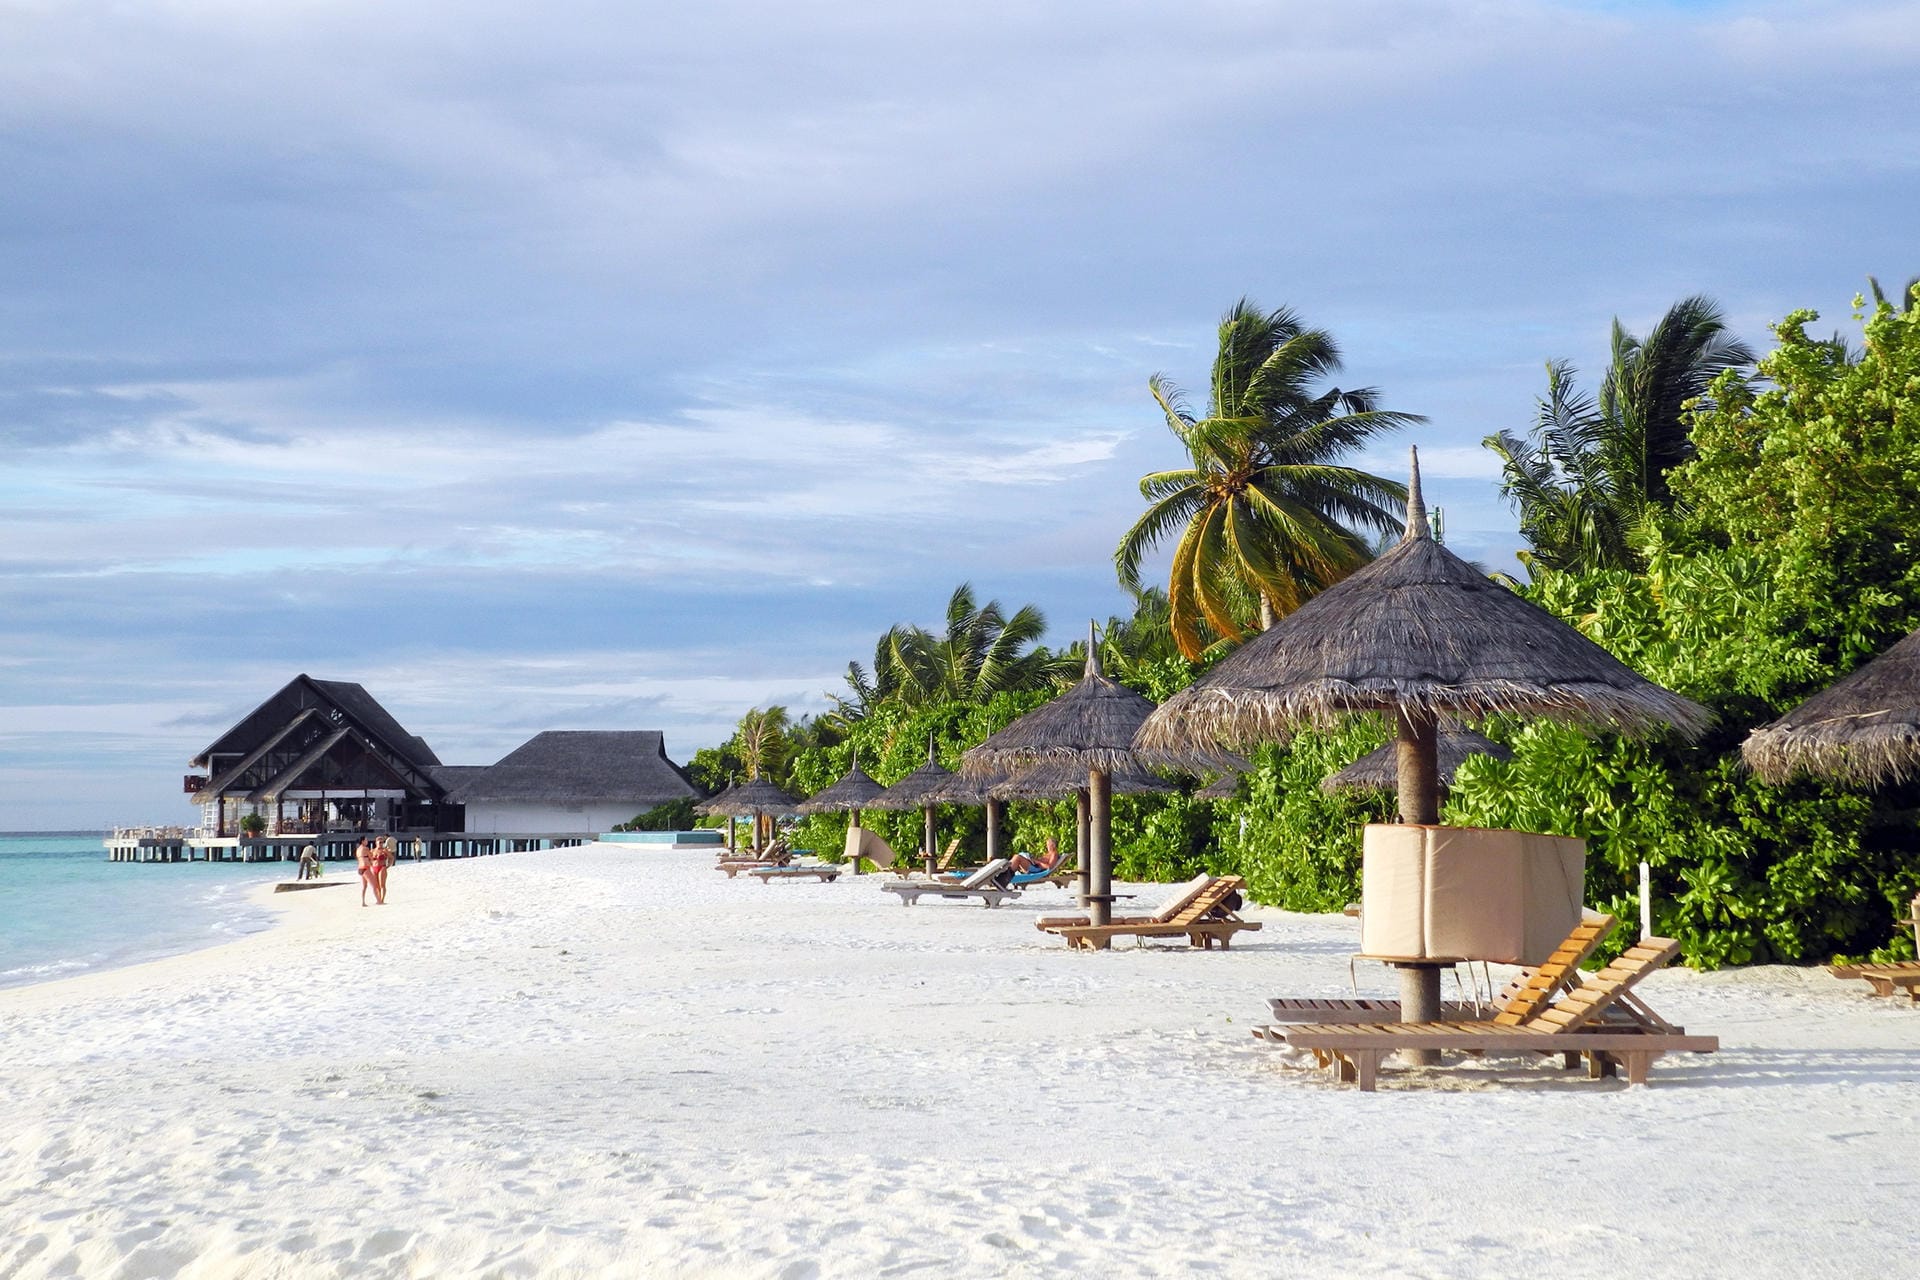 Puderweiße Strände: Urlaub auf den Malediven ist unter bestimmten Voraussetzungen wieder möglich.